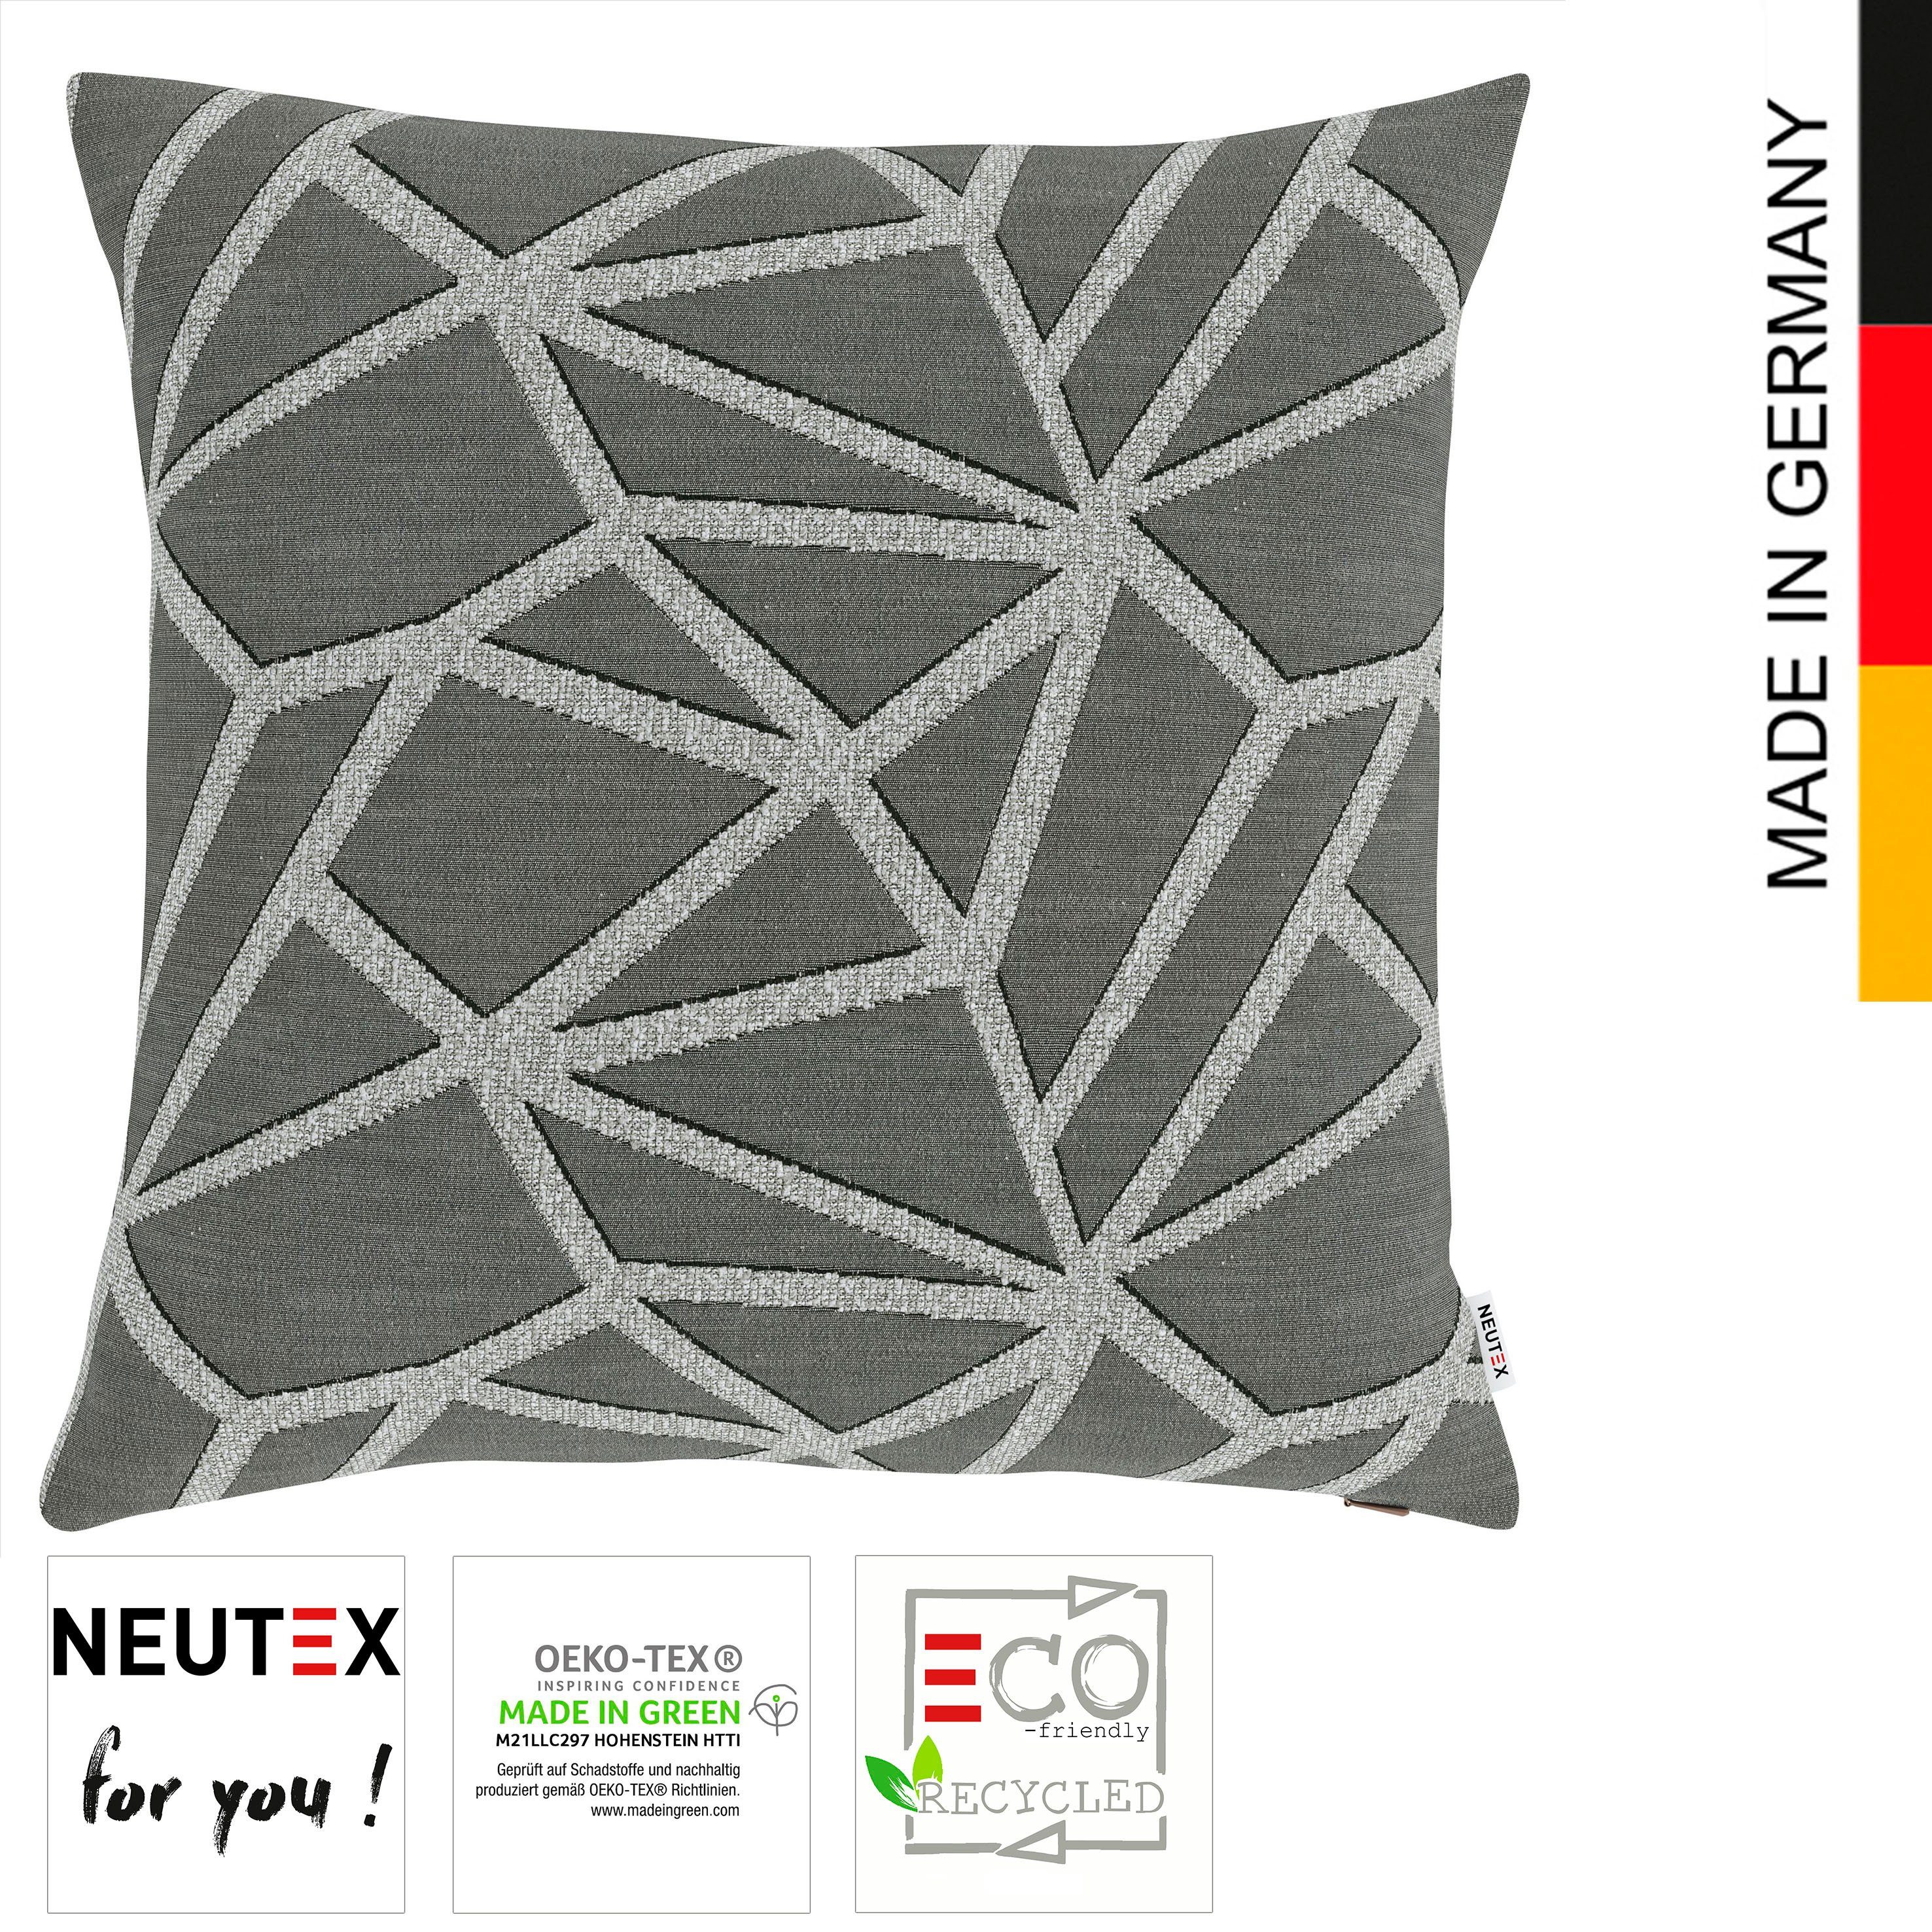 Kissenhülle Net zertifiziert, ohne Füllung Neutex Green leinen you! for Eco, (1 Made Stück), in